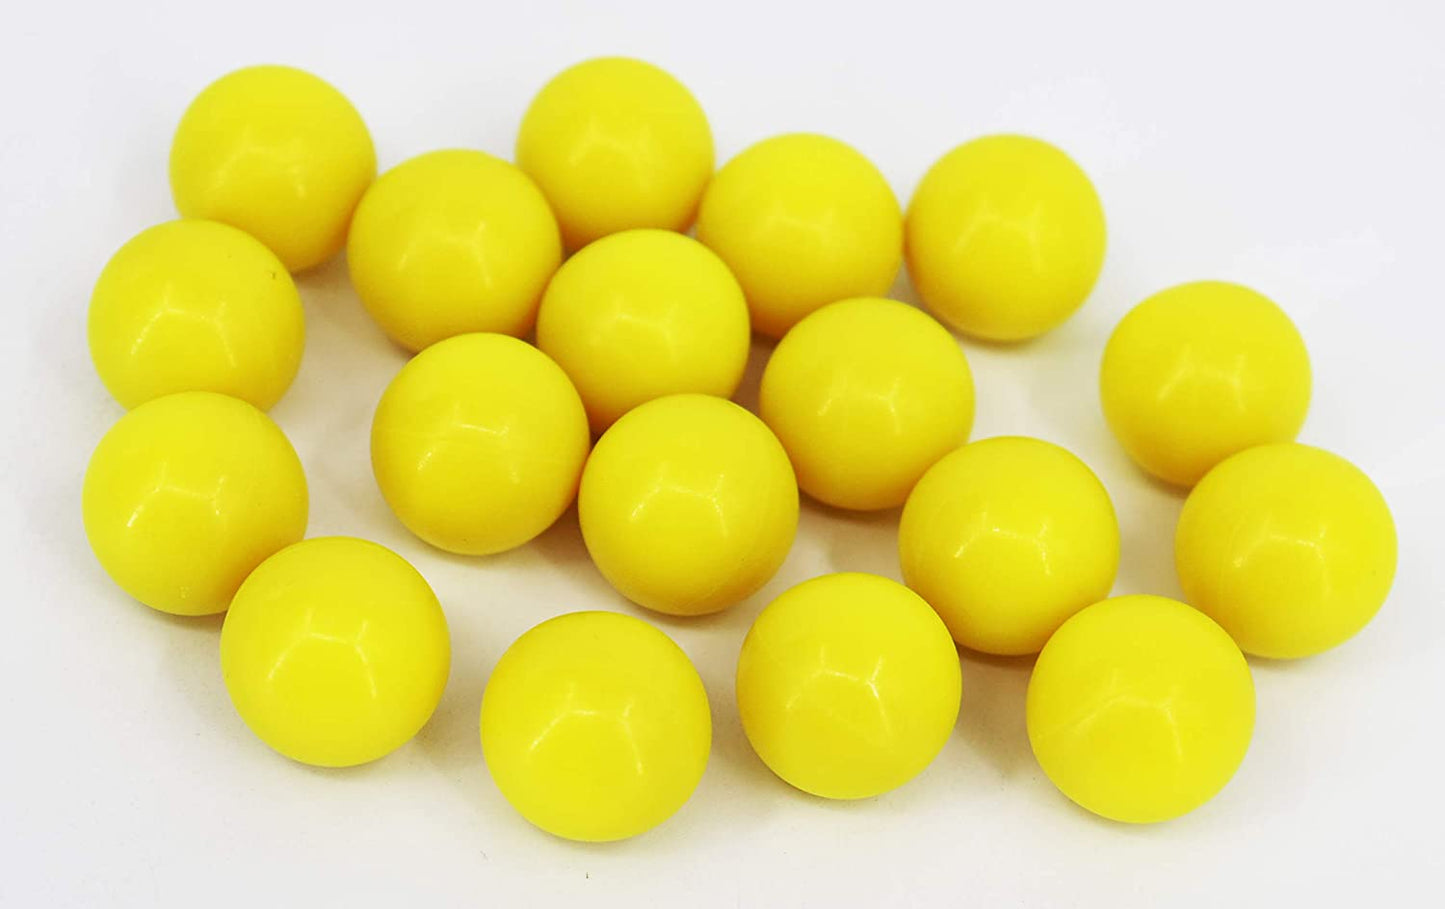 2000 Count Valken Fate .50 Cal Paintballs - Yellow Shell / Yellow Fill - Valken Paintball